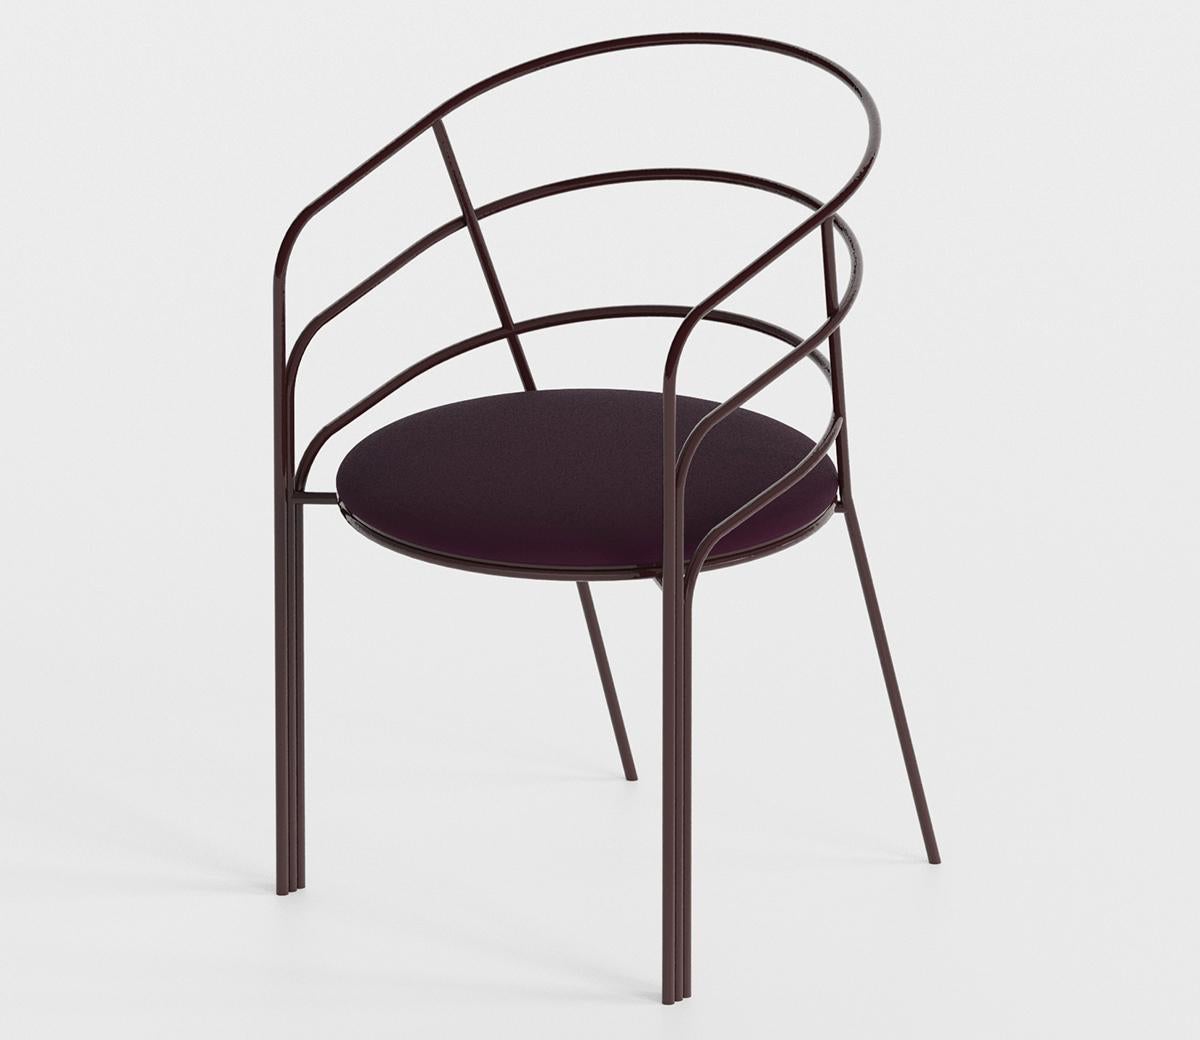 Der DeMille Chair ist von der stromlinienförmigen modernen Architektur der Eastside Modern in Los Angeles inspiriert. Pulverbeschichtetes Gestell aus Edelstahl mit abnehmbaren, mit Outdoor-Stoff bezogenen Polstern. Dieser Stuhl sieht sowohl drinnen